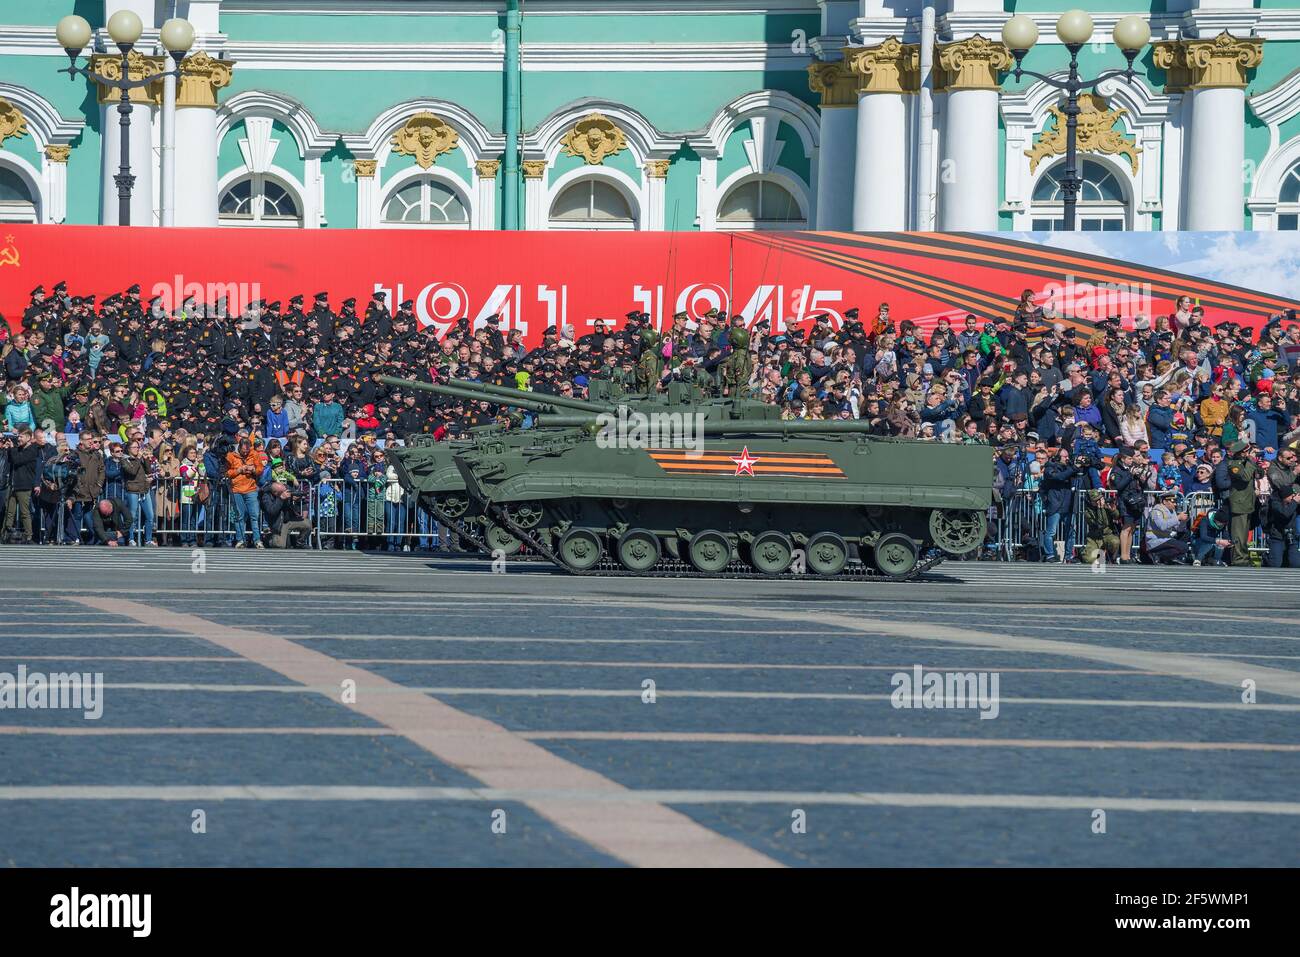 ST. PETERSBURG, RUSSIA - 06 MAGGIO 2018: Due veicoli da combattimento di fanteria (BMP-3) sullo sfondo di stand con spettatori Foto Stock